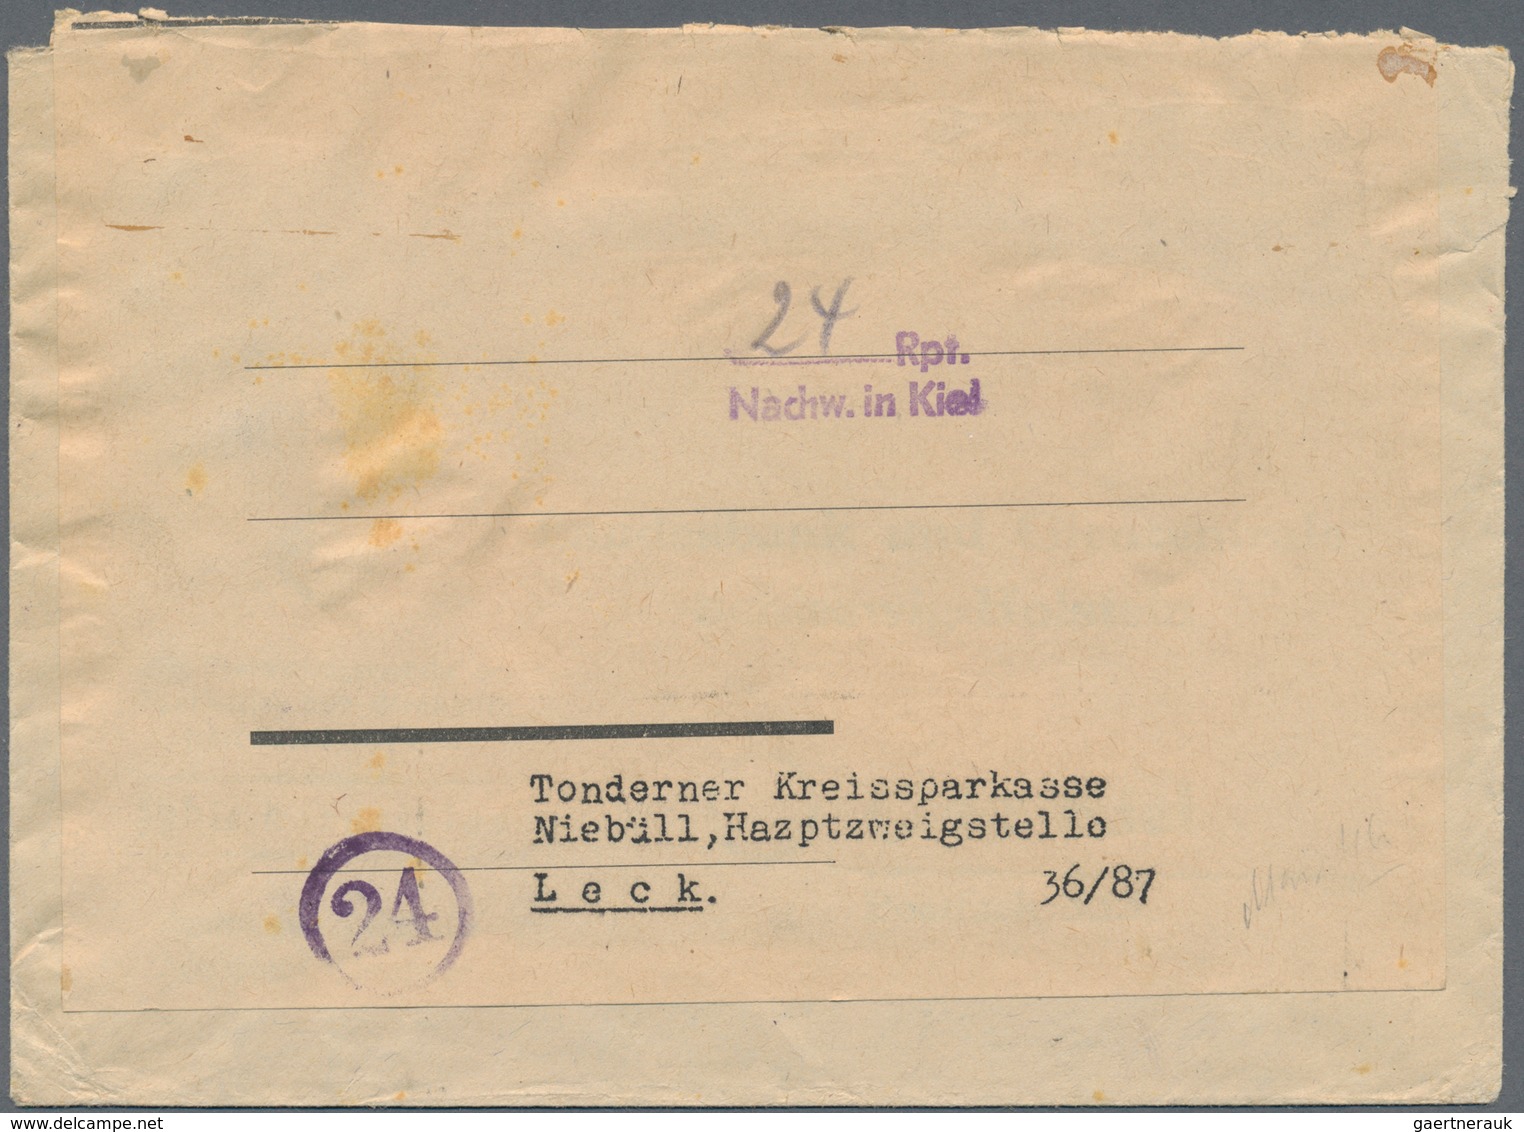 Alliierte Besetzung - Gebühr Bezahlt: 1945/1948, Schleswig-Holstein/Weser-Ems Plz 23+24, saubere Par